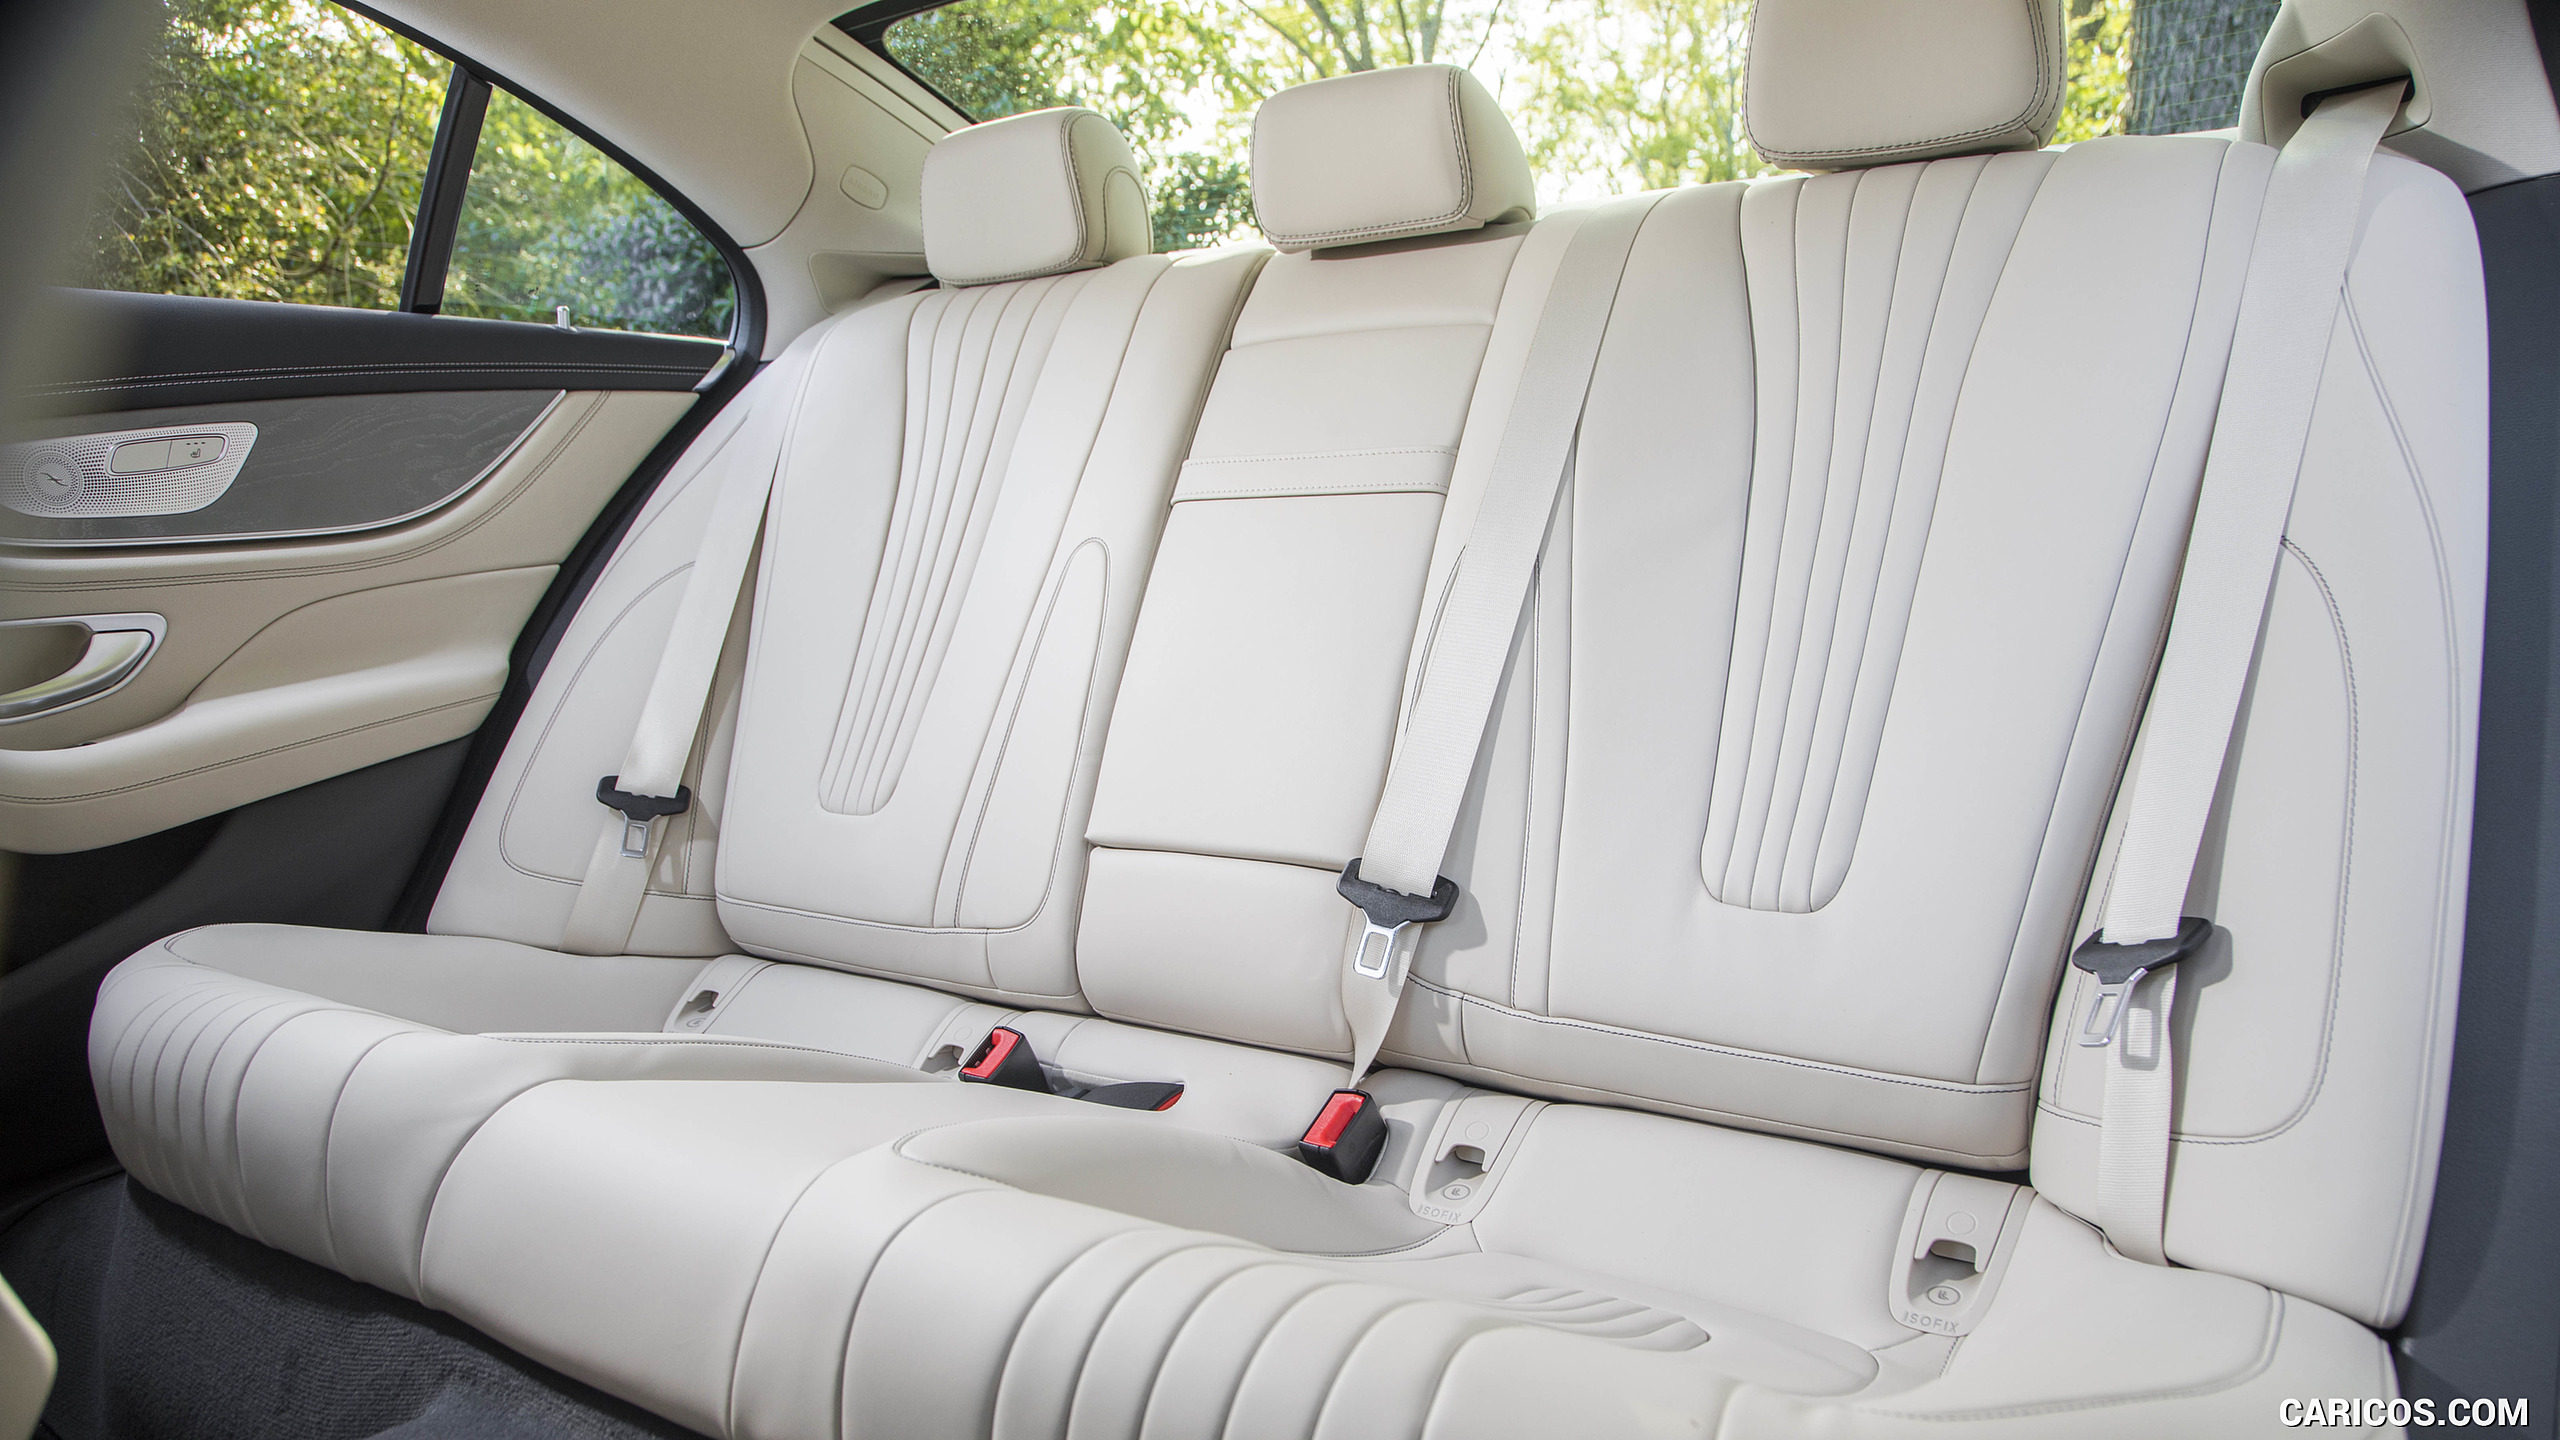 2019 Mercedes-Benz CLS 450 4MATIC (US-Spec) - Interior, Rear Seats, #193 of 231